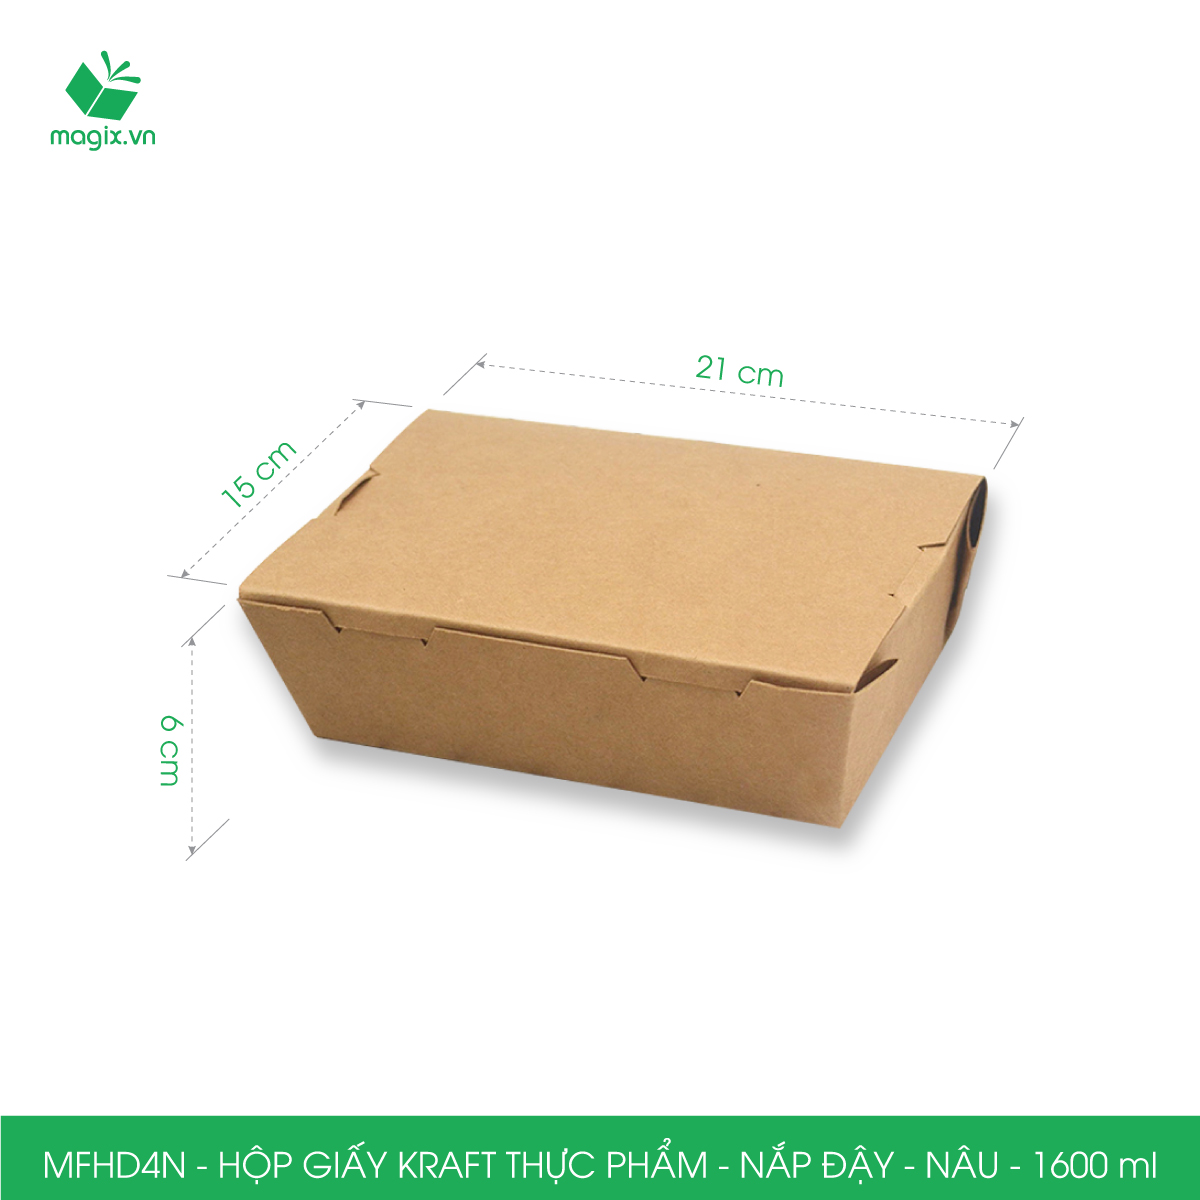 Combo 25 hộp giấy kraft thực phẩm, hộp đựng thức ăn nắp đậy màu nâu, hộp gói đồ ăn mang đi